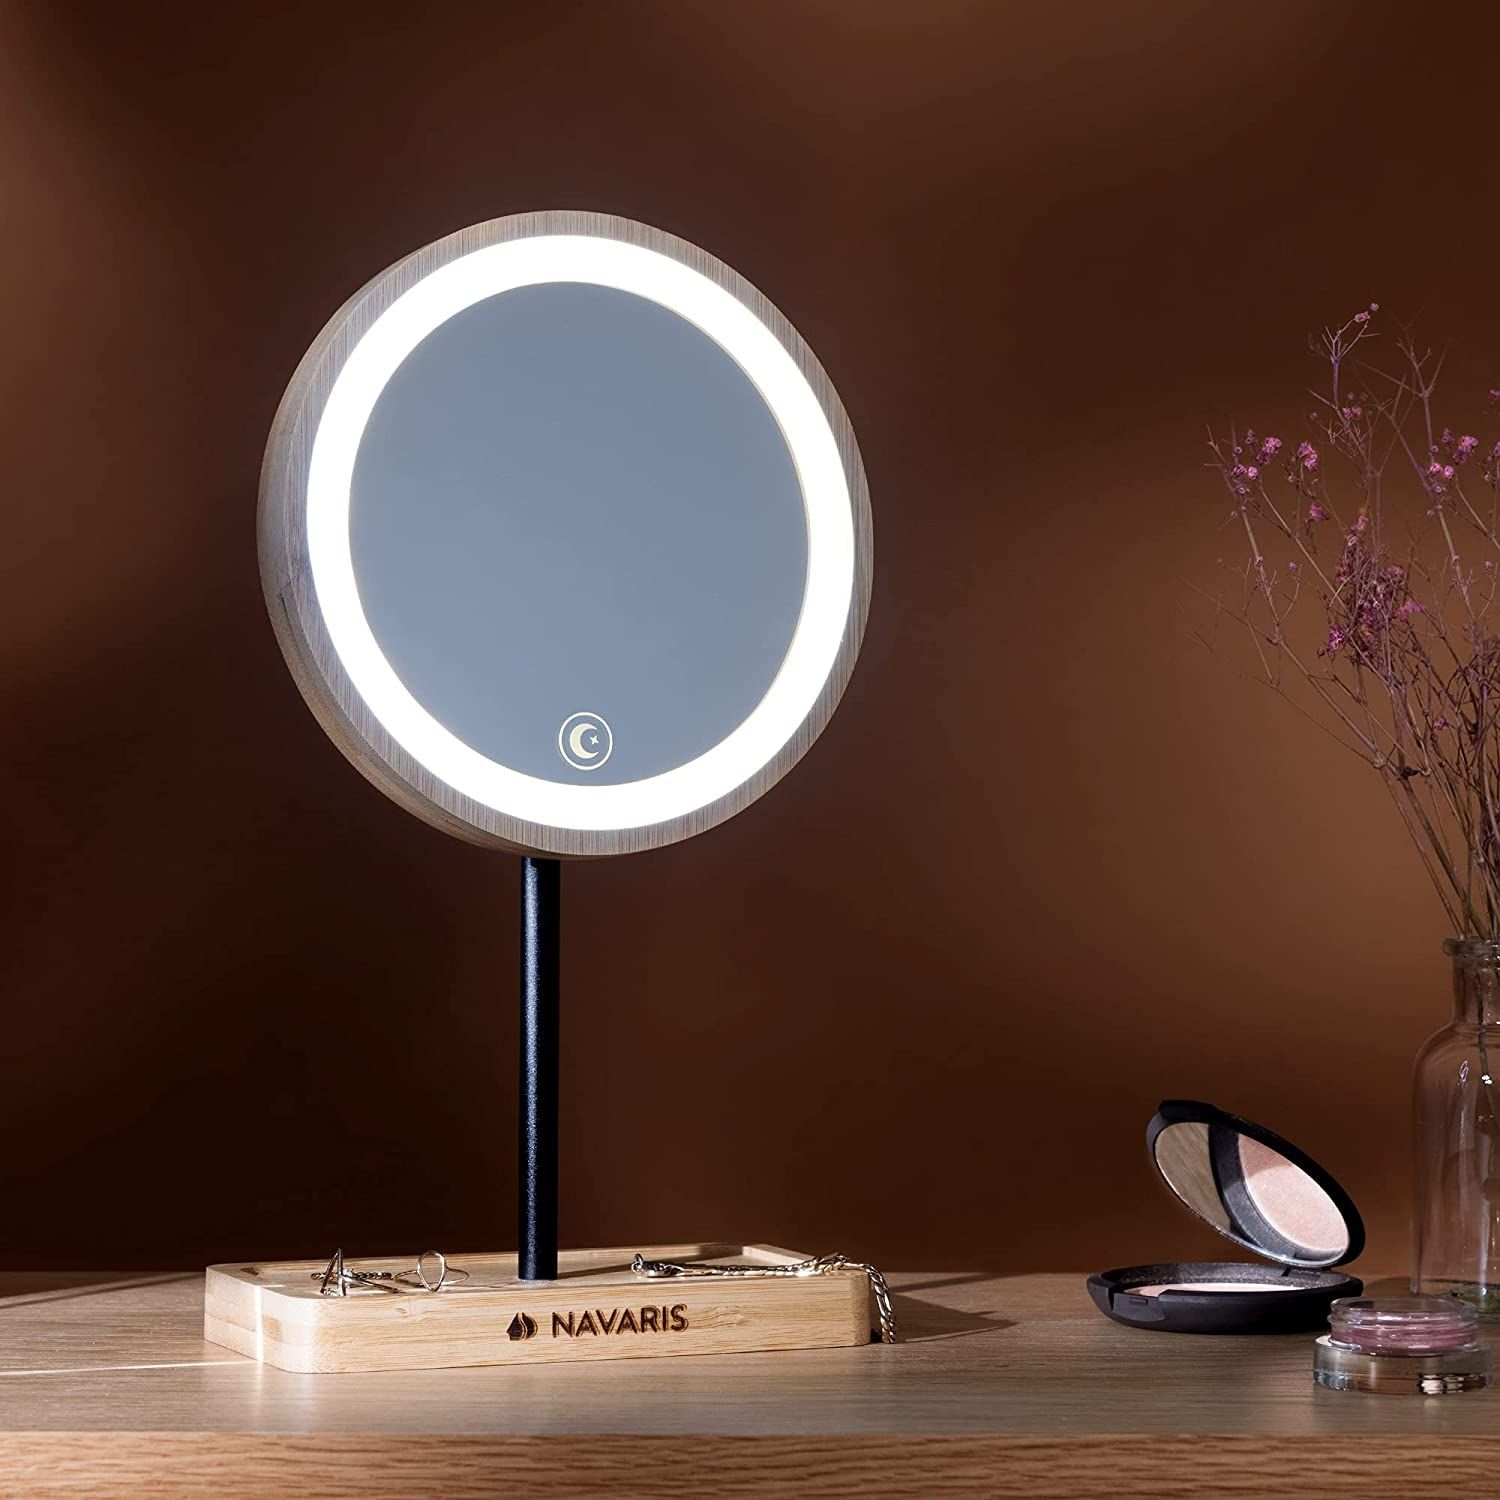 navaris-led-cosmetic-mirror-with-stand-kathreptis-makigiaz-apo-bamboo-me-fotismo-led-kai-vasi-gia-kosmimata-light-brown-7.jpg